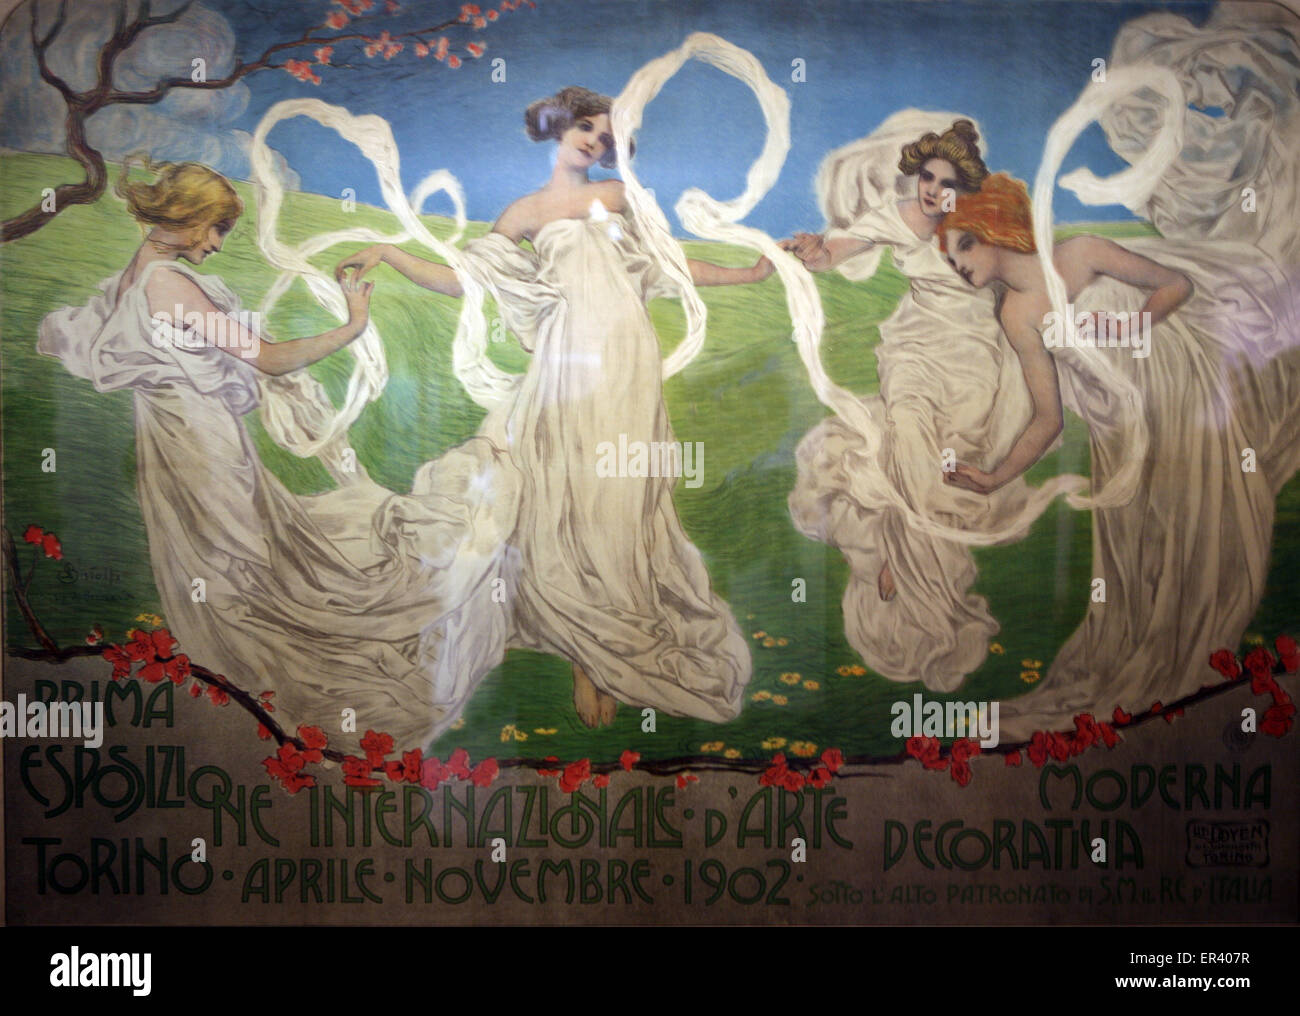 Première exposition internationale des arts décoratifs de Turin 1902 poster Banque D'Images